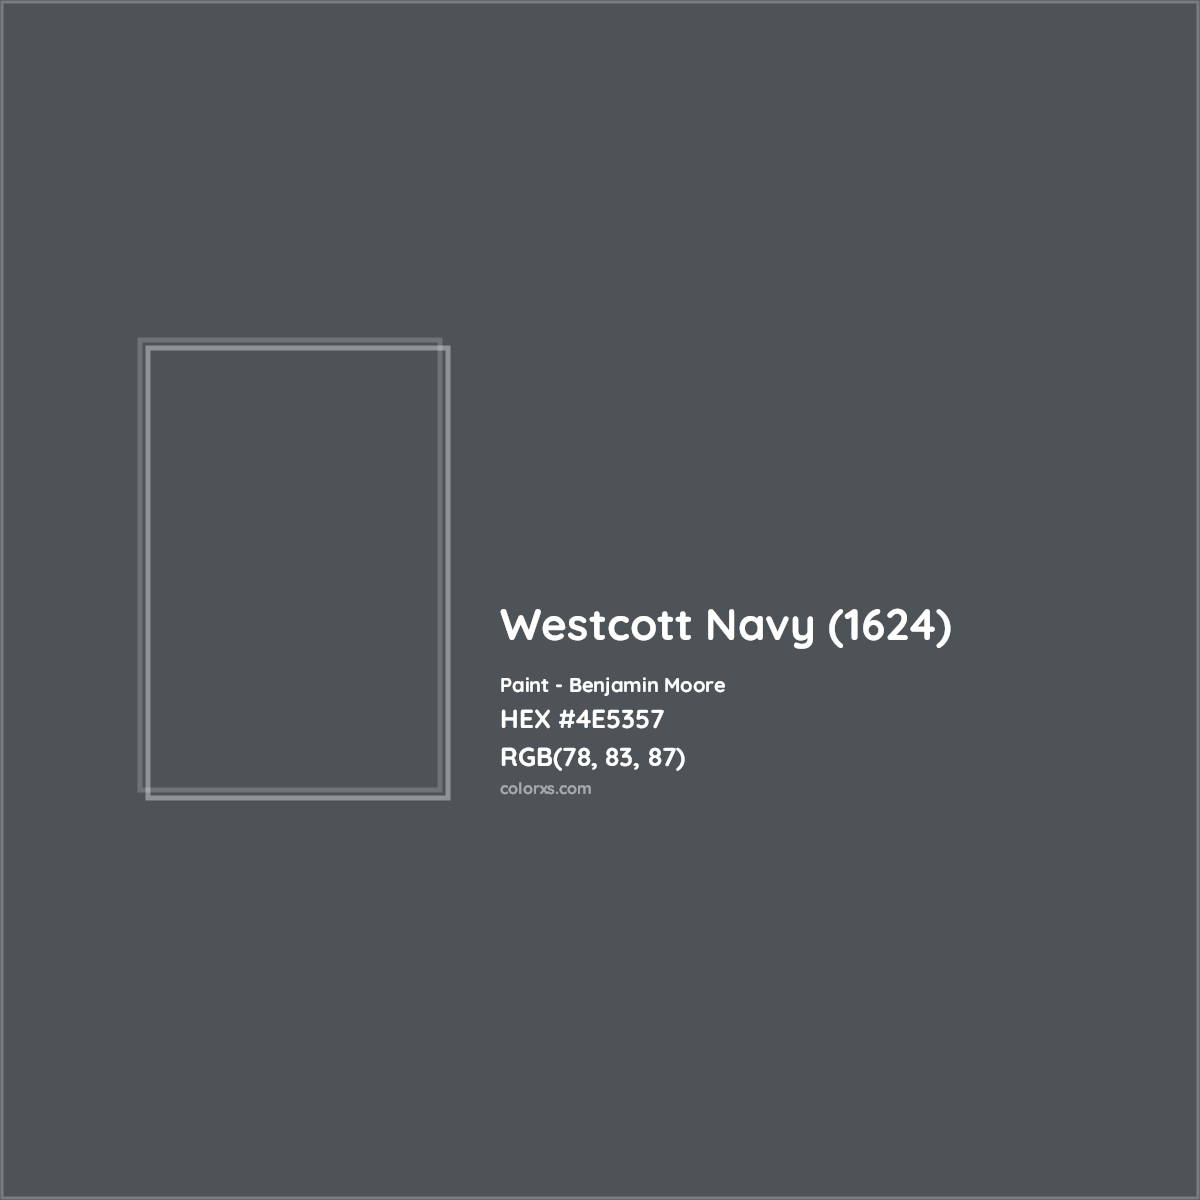 HEX #4E5357 Westcott Navy (1624) Paint Benjamin Moore - Color Code